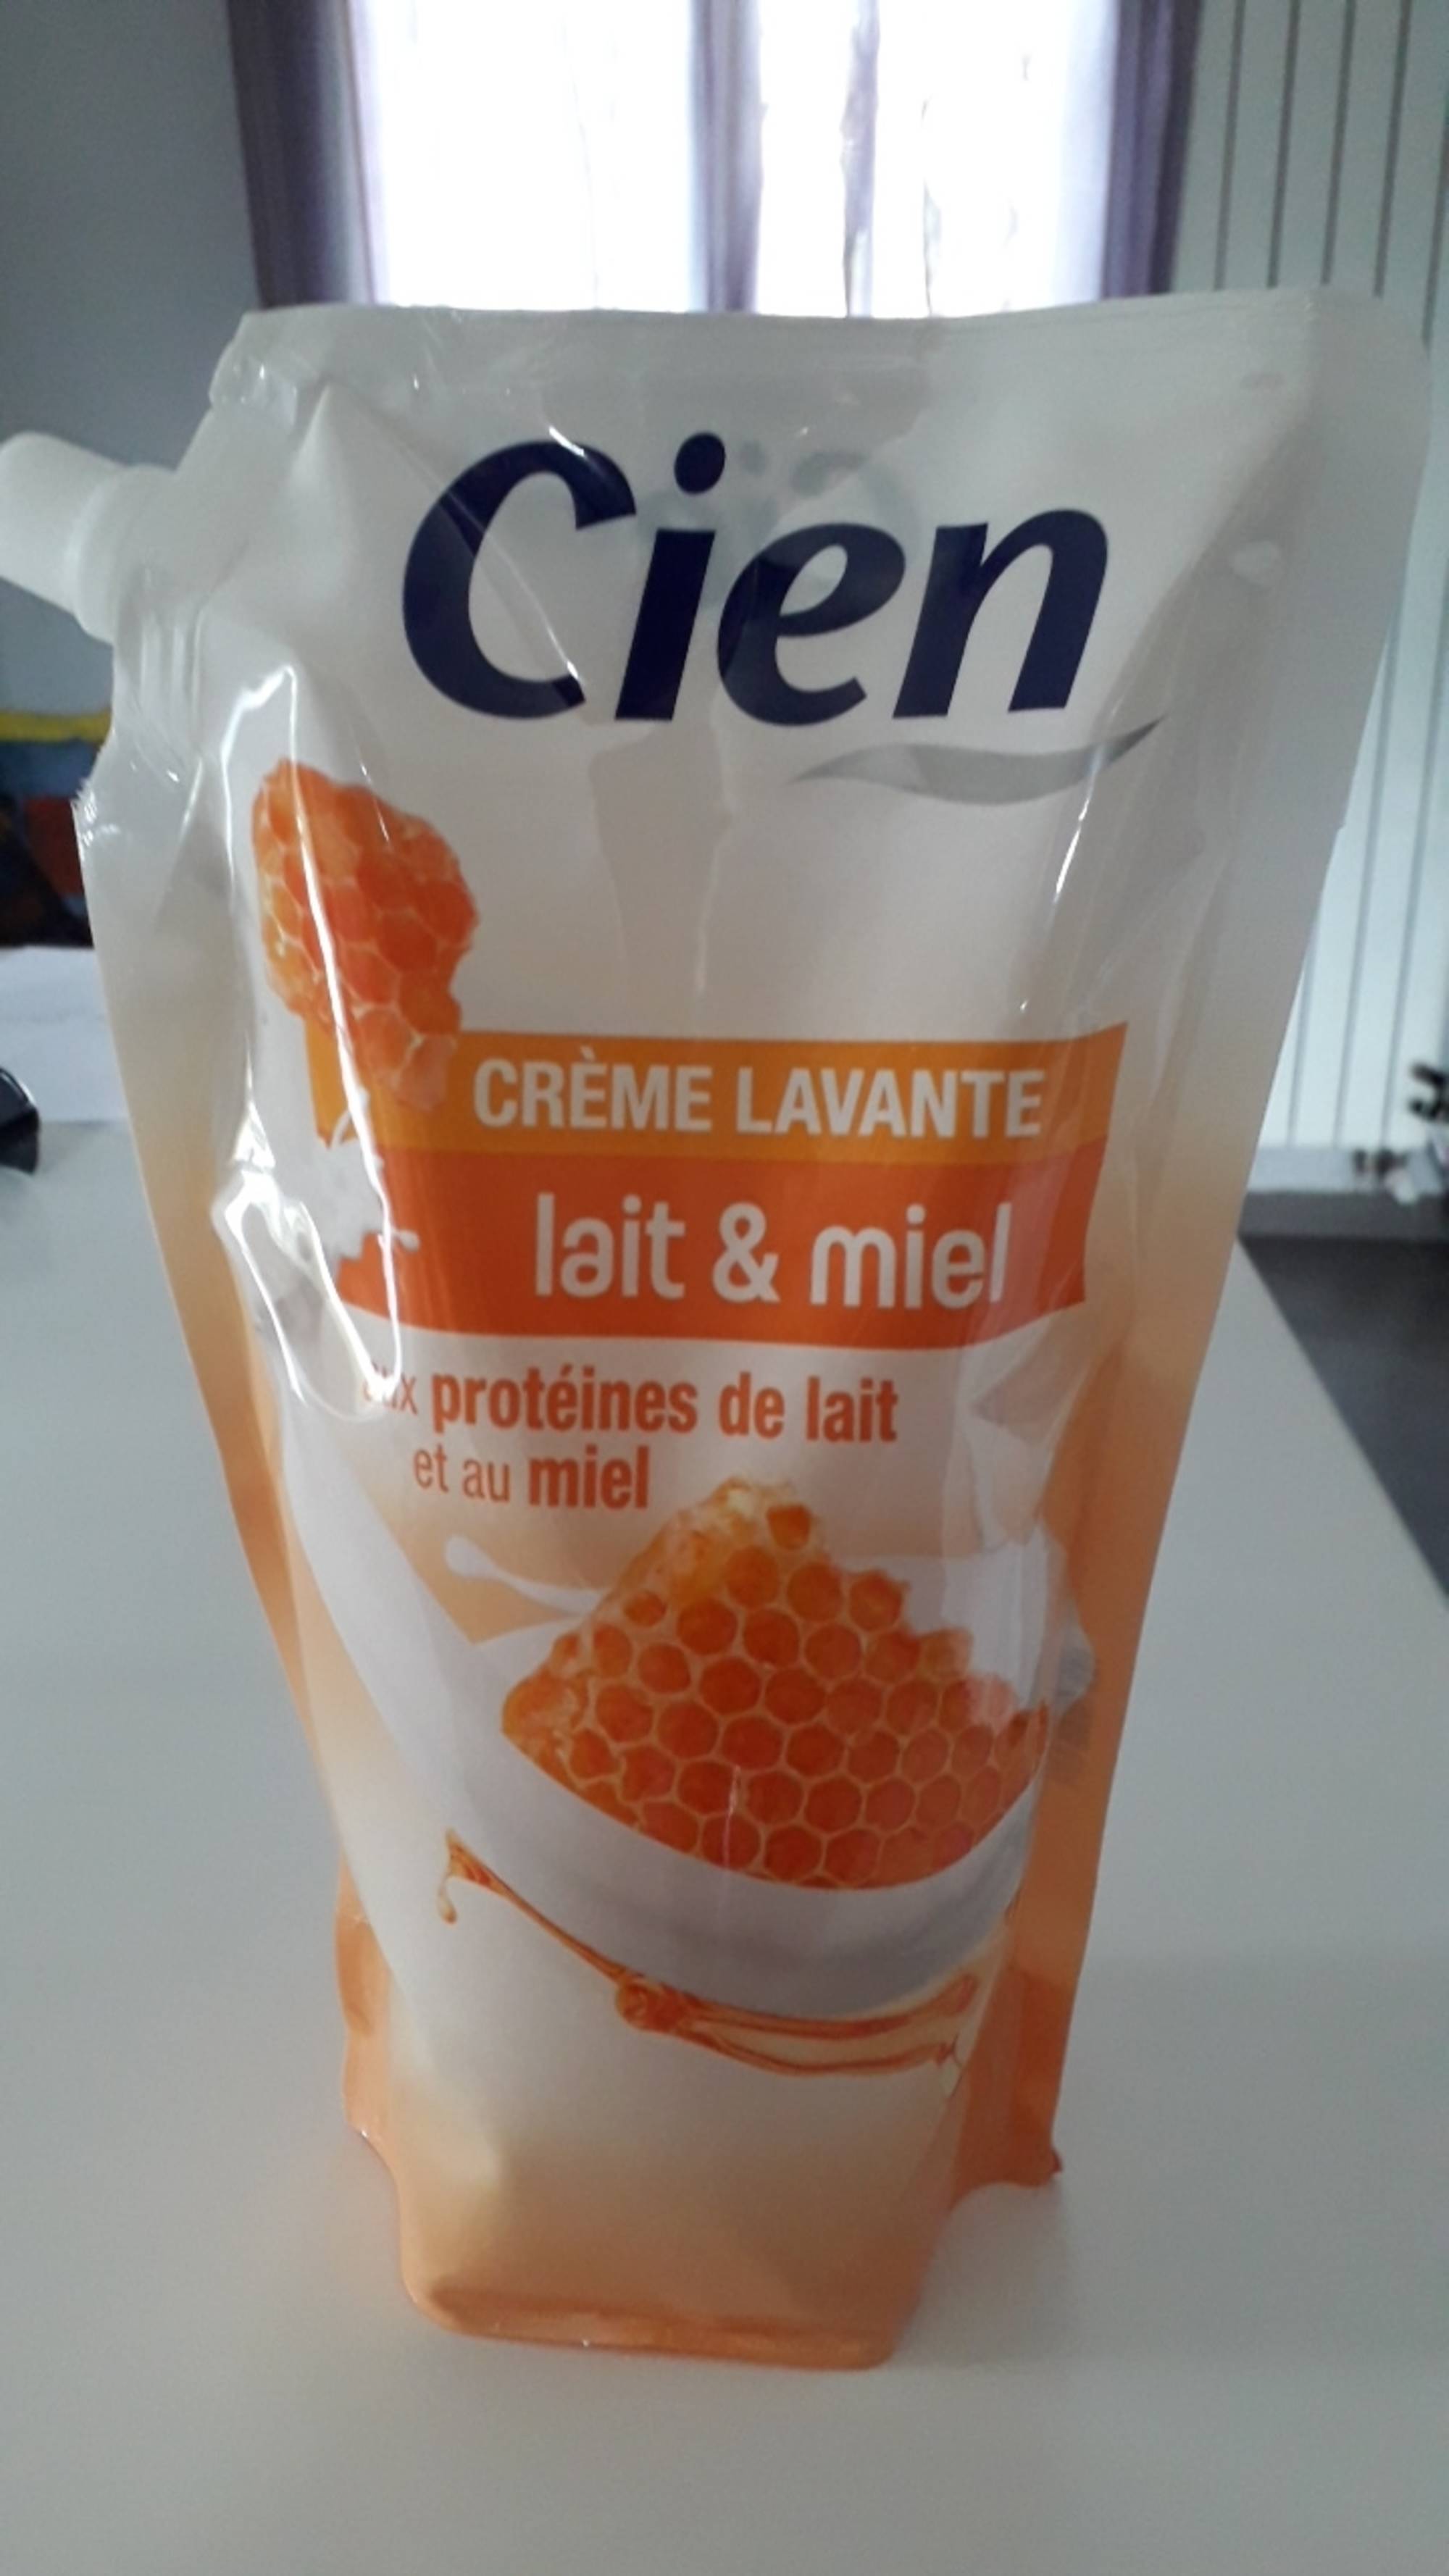 CIEN - Crème lavante lait & miel